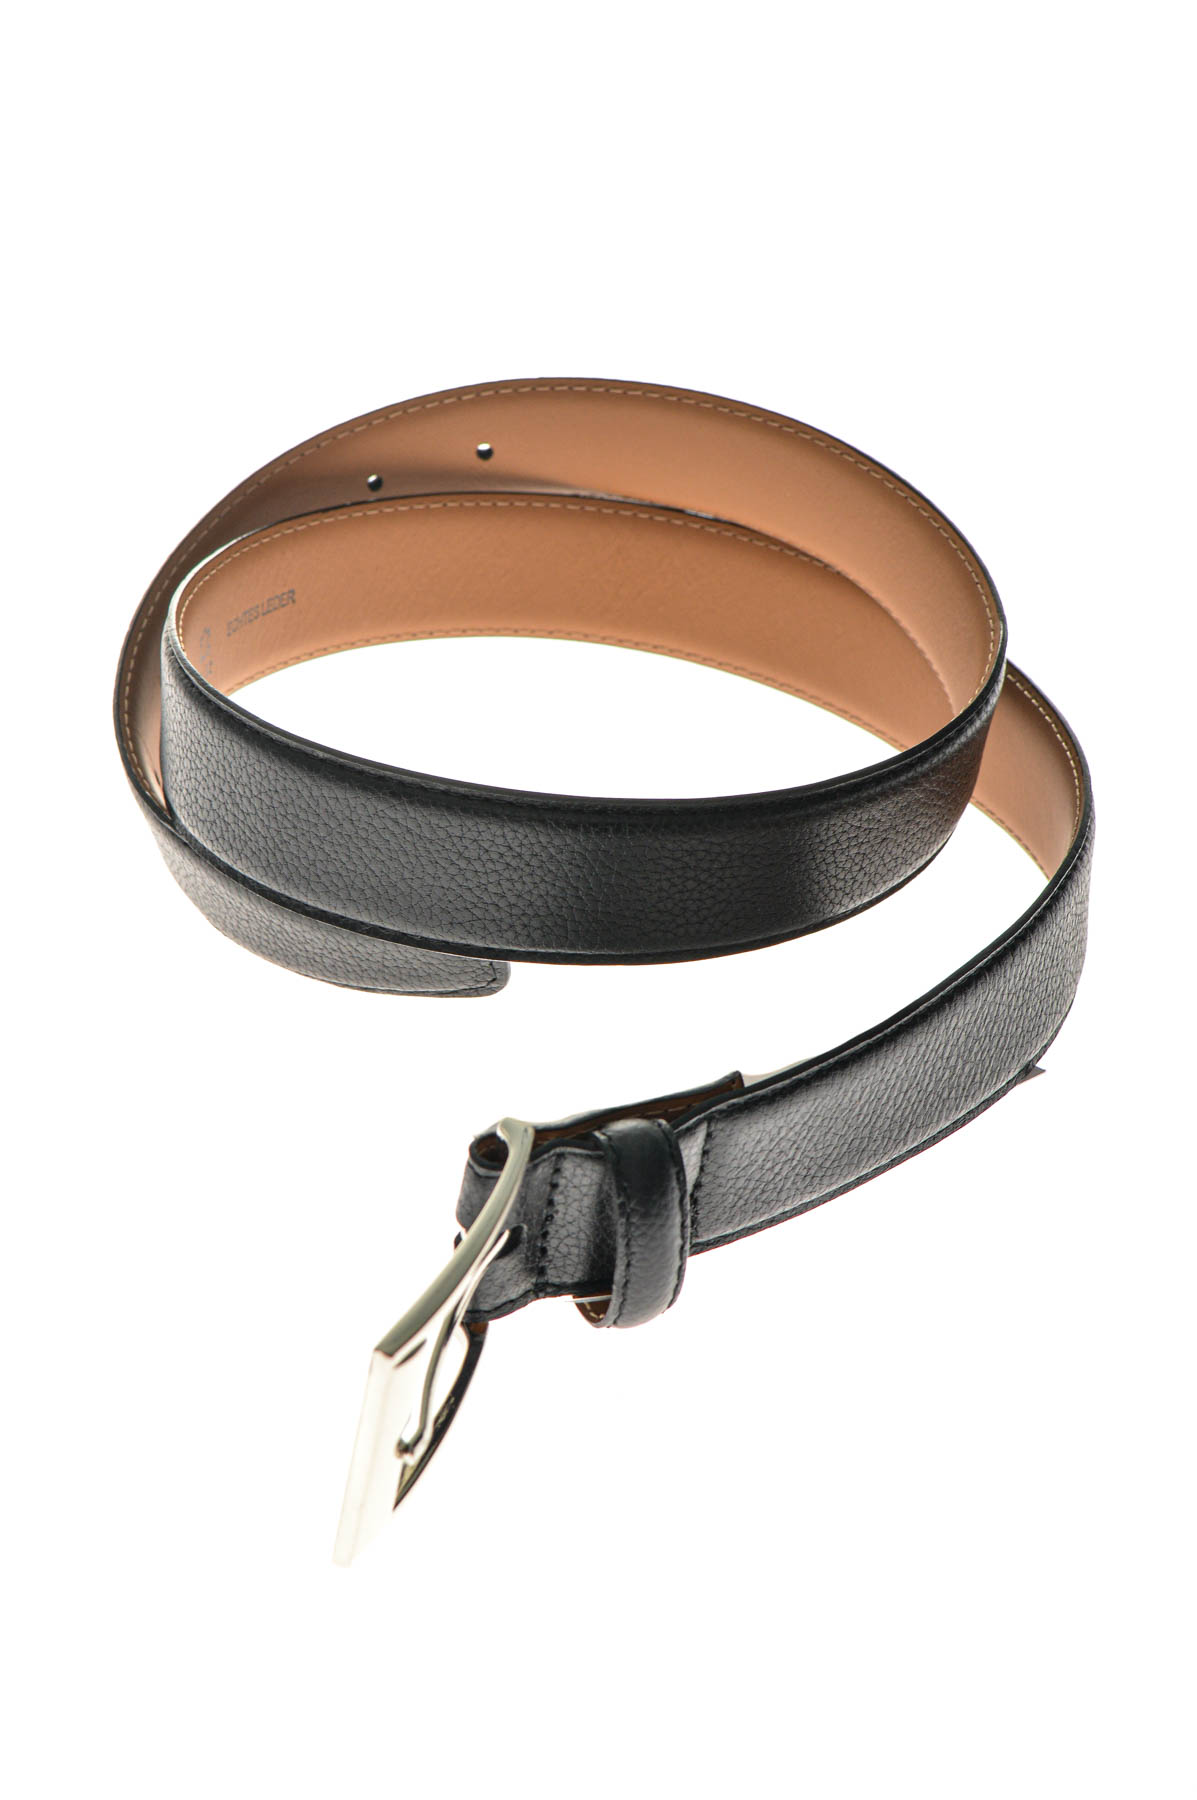 Men's belt - Ahlemeister GmbH - 1